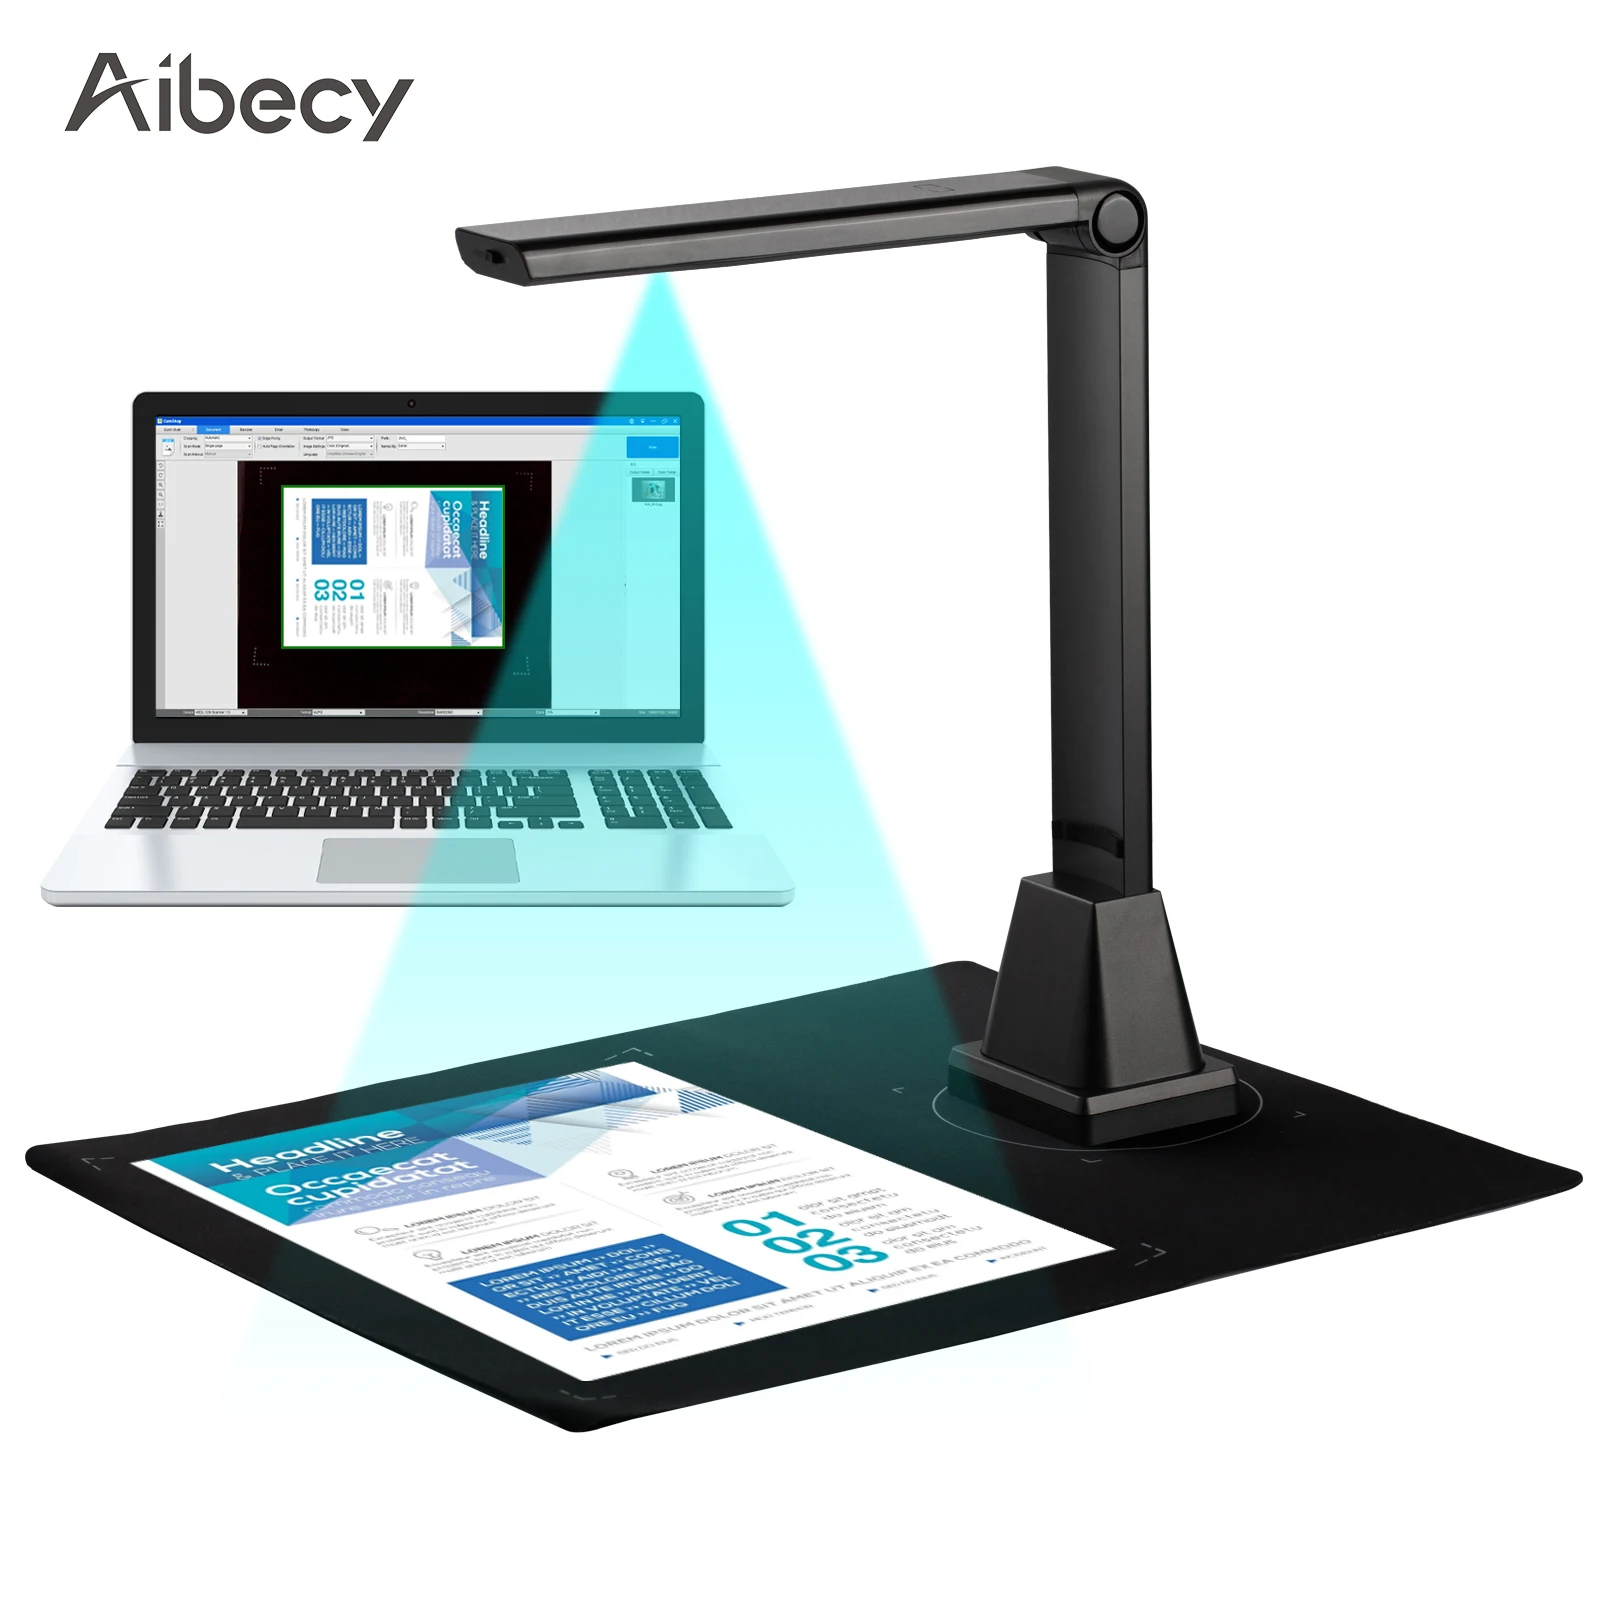 

Aibecy G500TS-R Портативный сканер документов Камера сканер 5 мегапикселей захвата A4 распознавания Функция файл Сканирование штрих-кодов для офис...